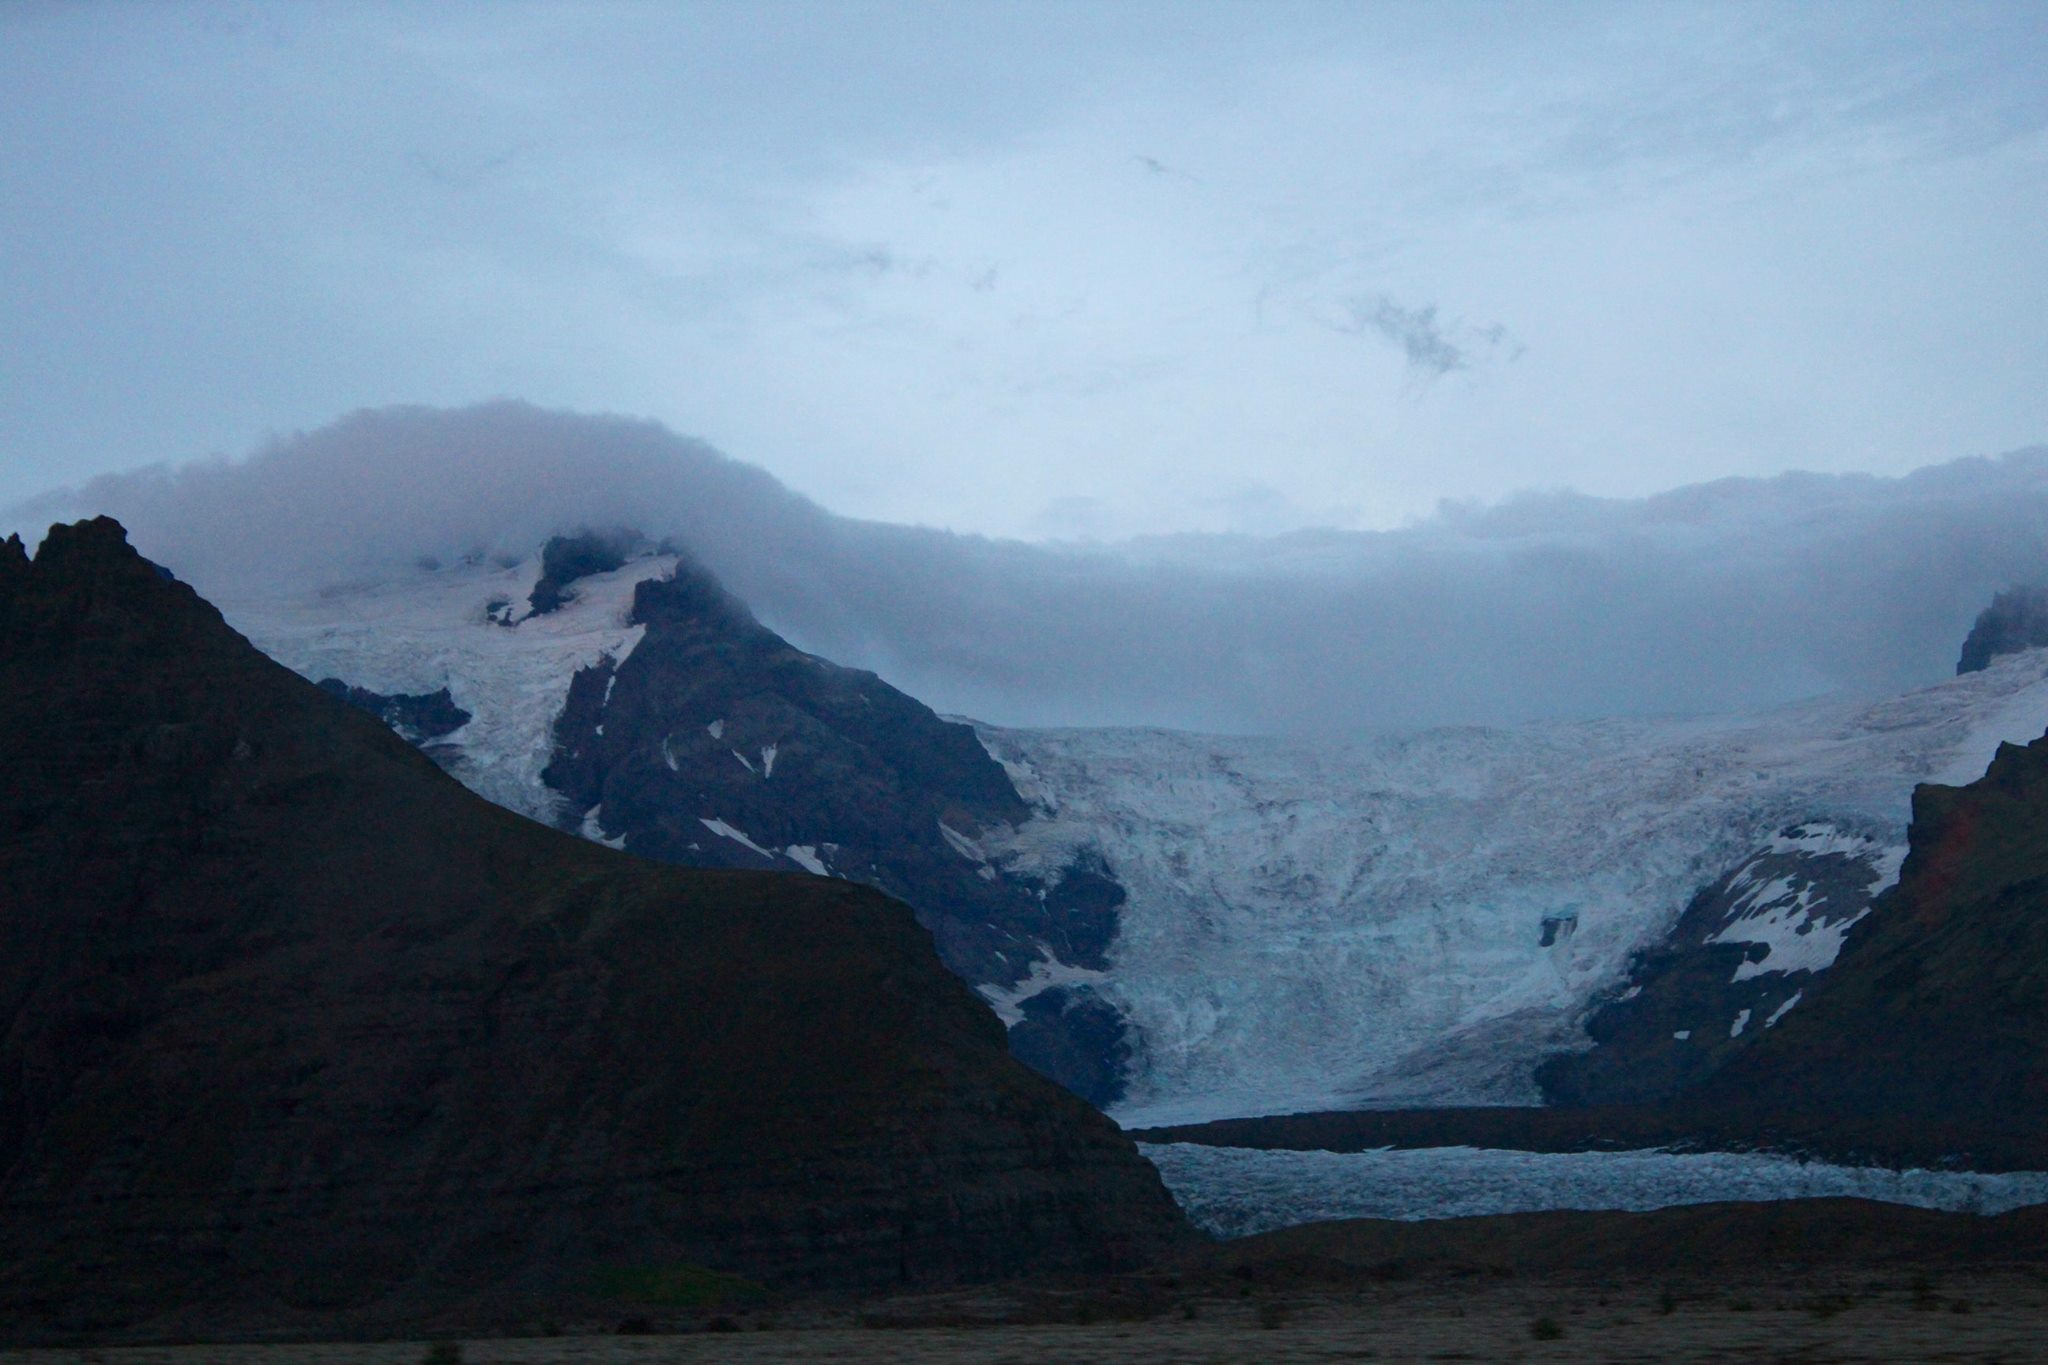 We slept next to this humungous Hvannadalshnúkur peak and glacier when our van heater broke down